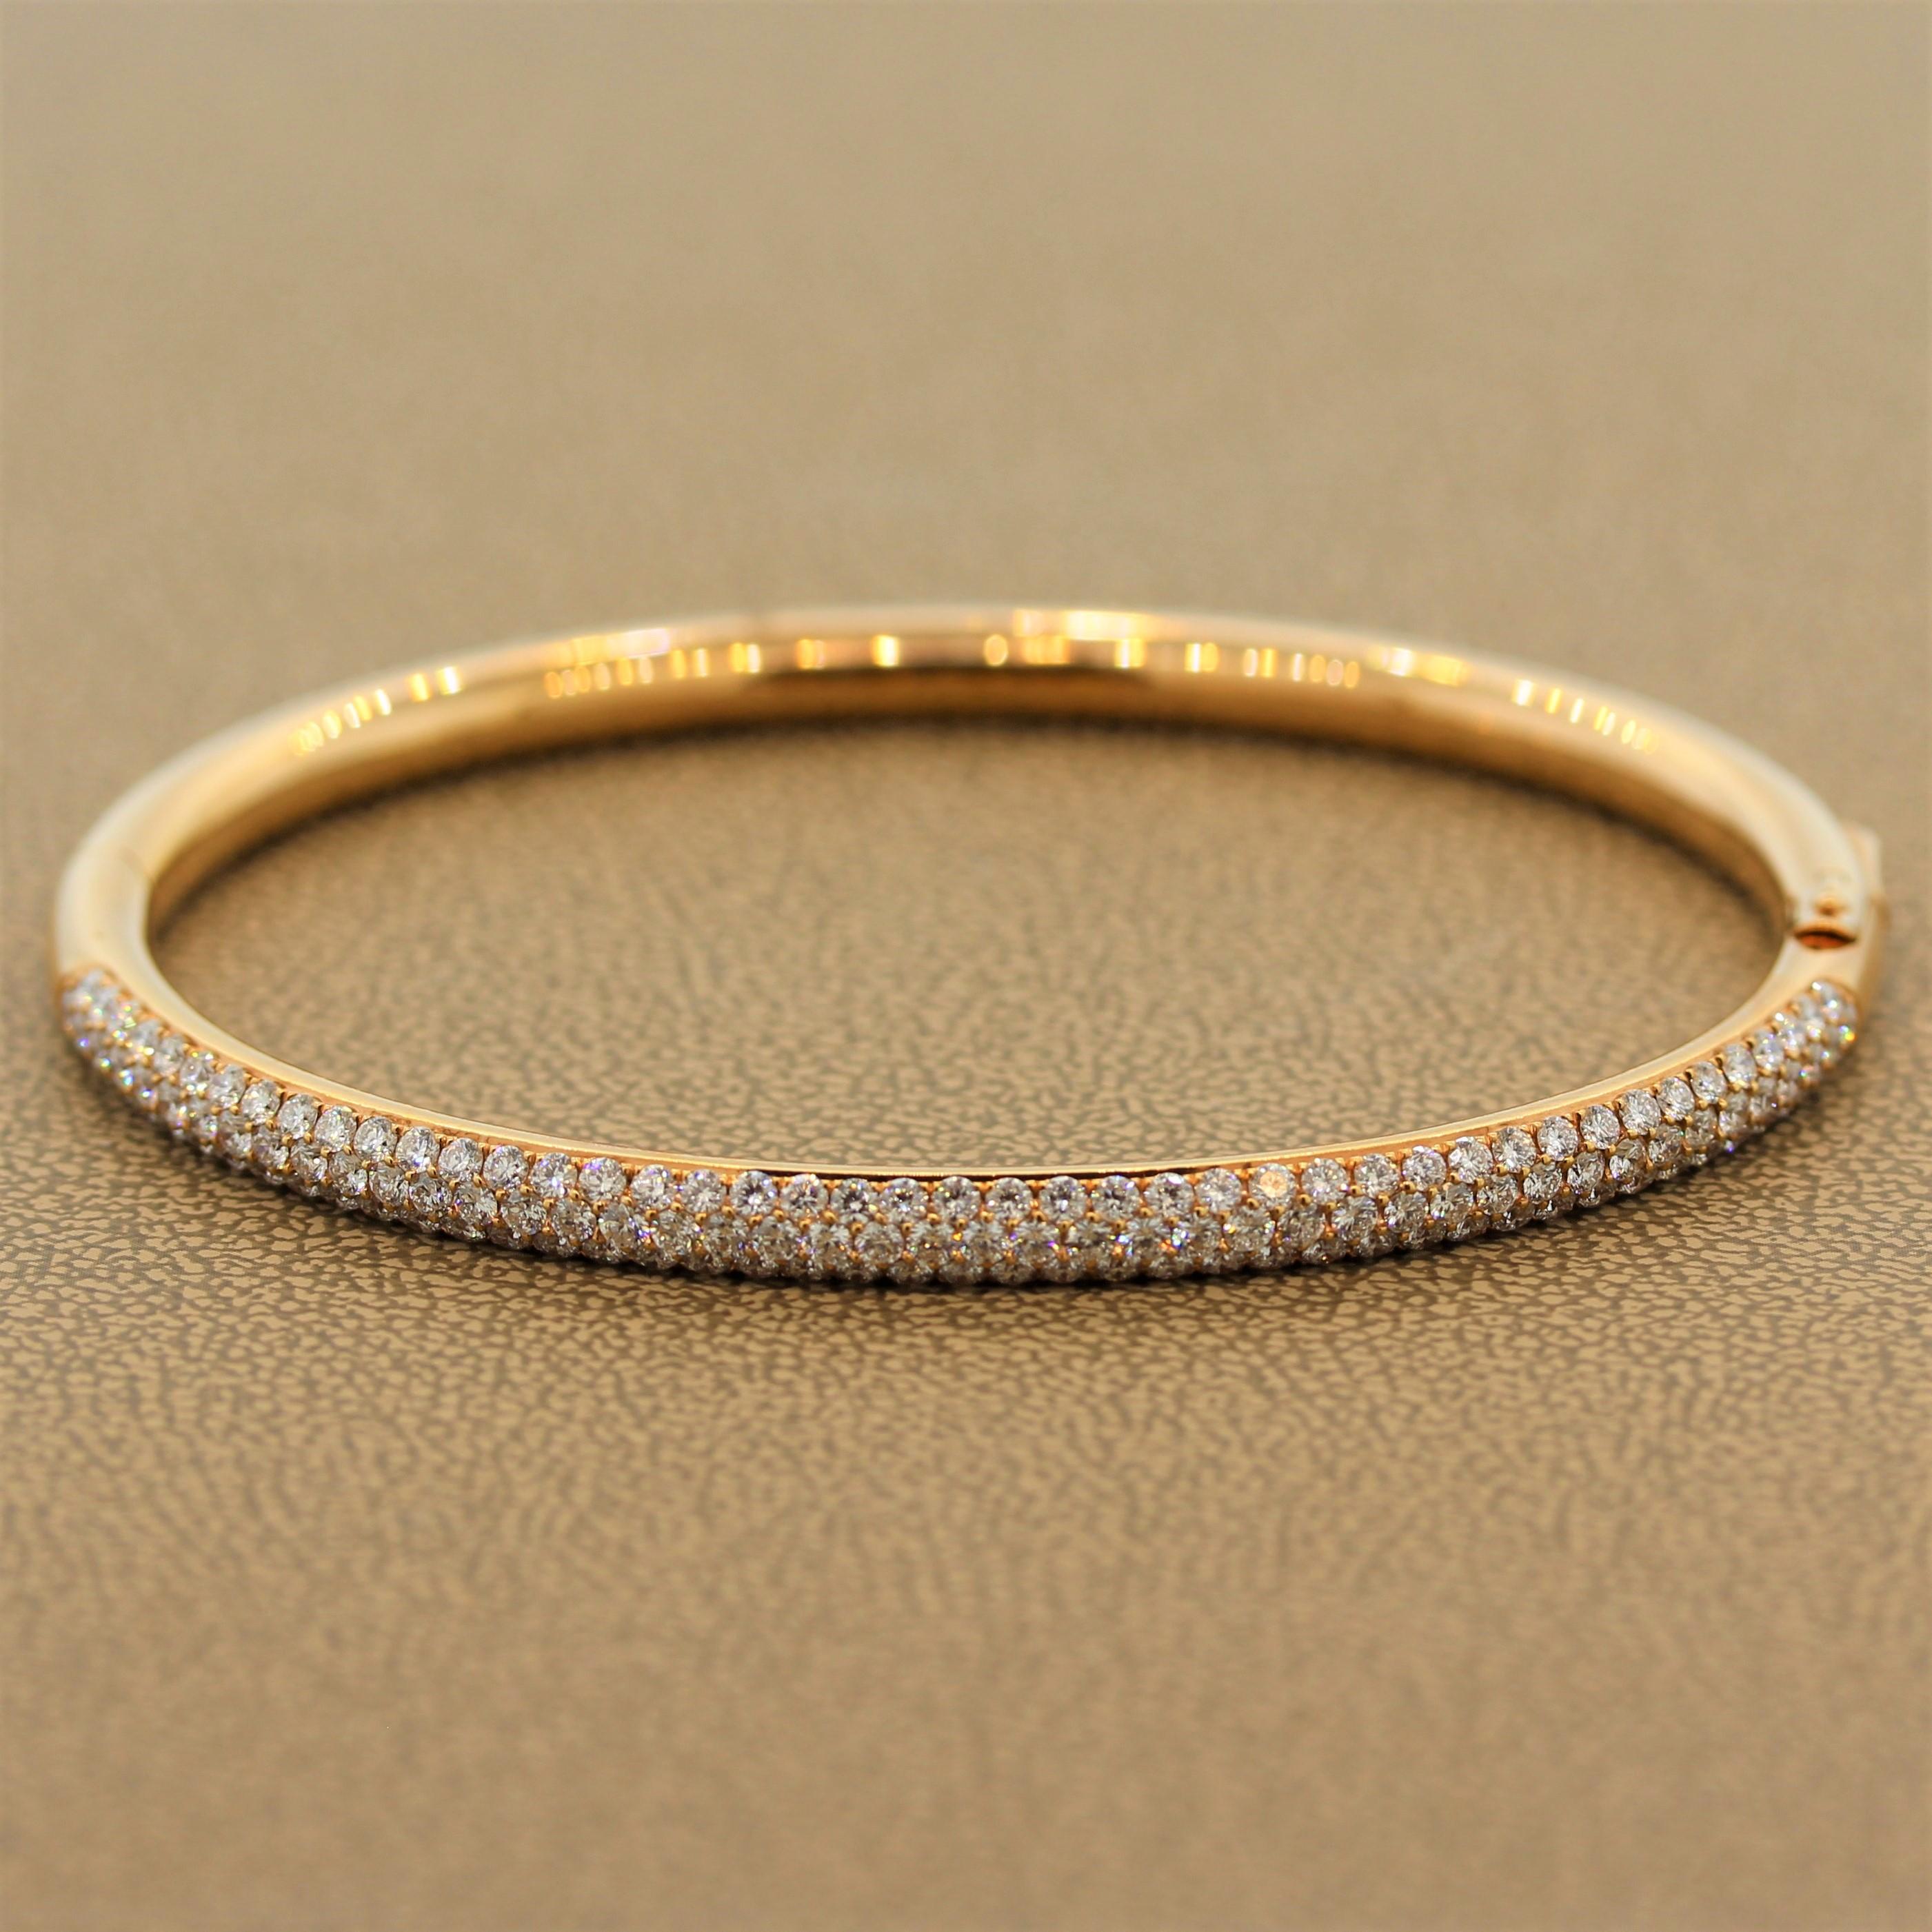 Un bracelet rigide à l'élégance intemporelle comportant 2,86 carats de diamants de qualité VS. Les diamants incolores sertis en pavé sont sertis dans un or rose 18 carats de forme légèrement ovale pour épouser la forme naturelle du poignet. Les